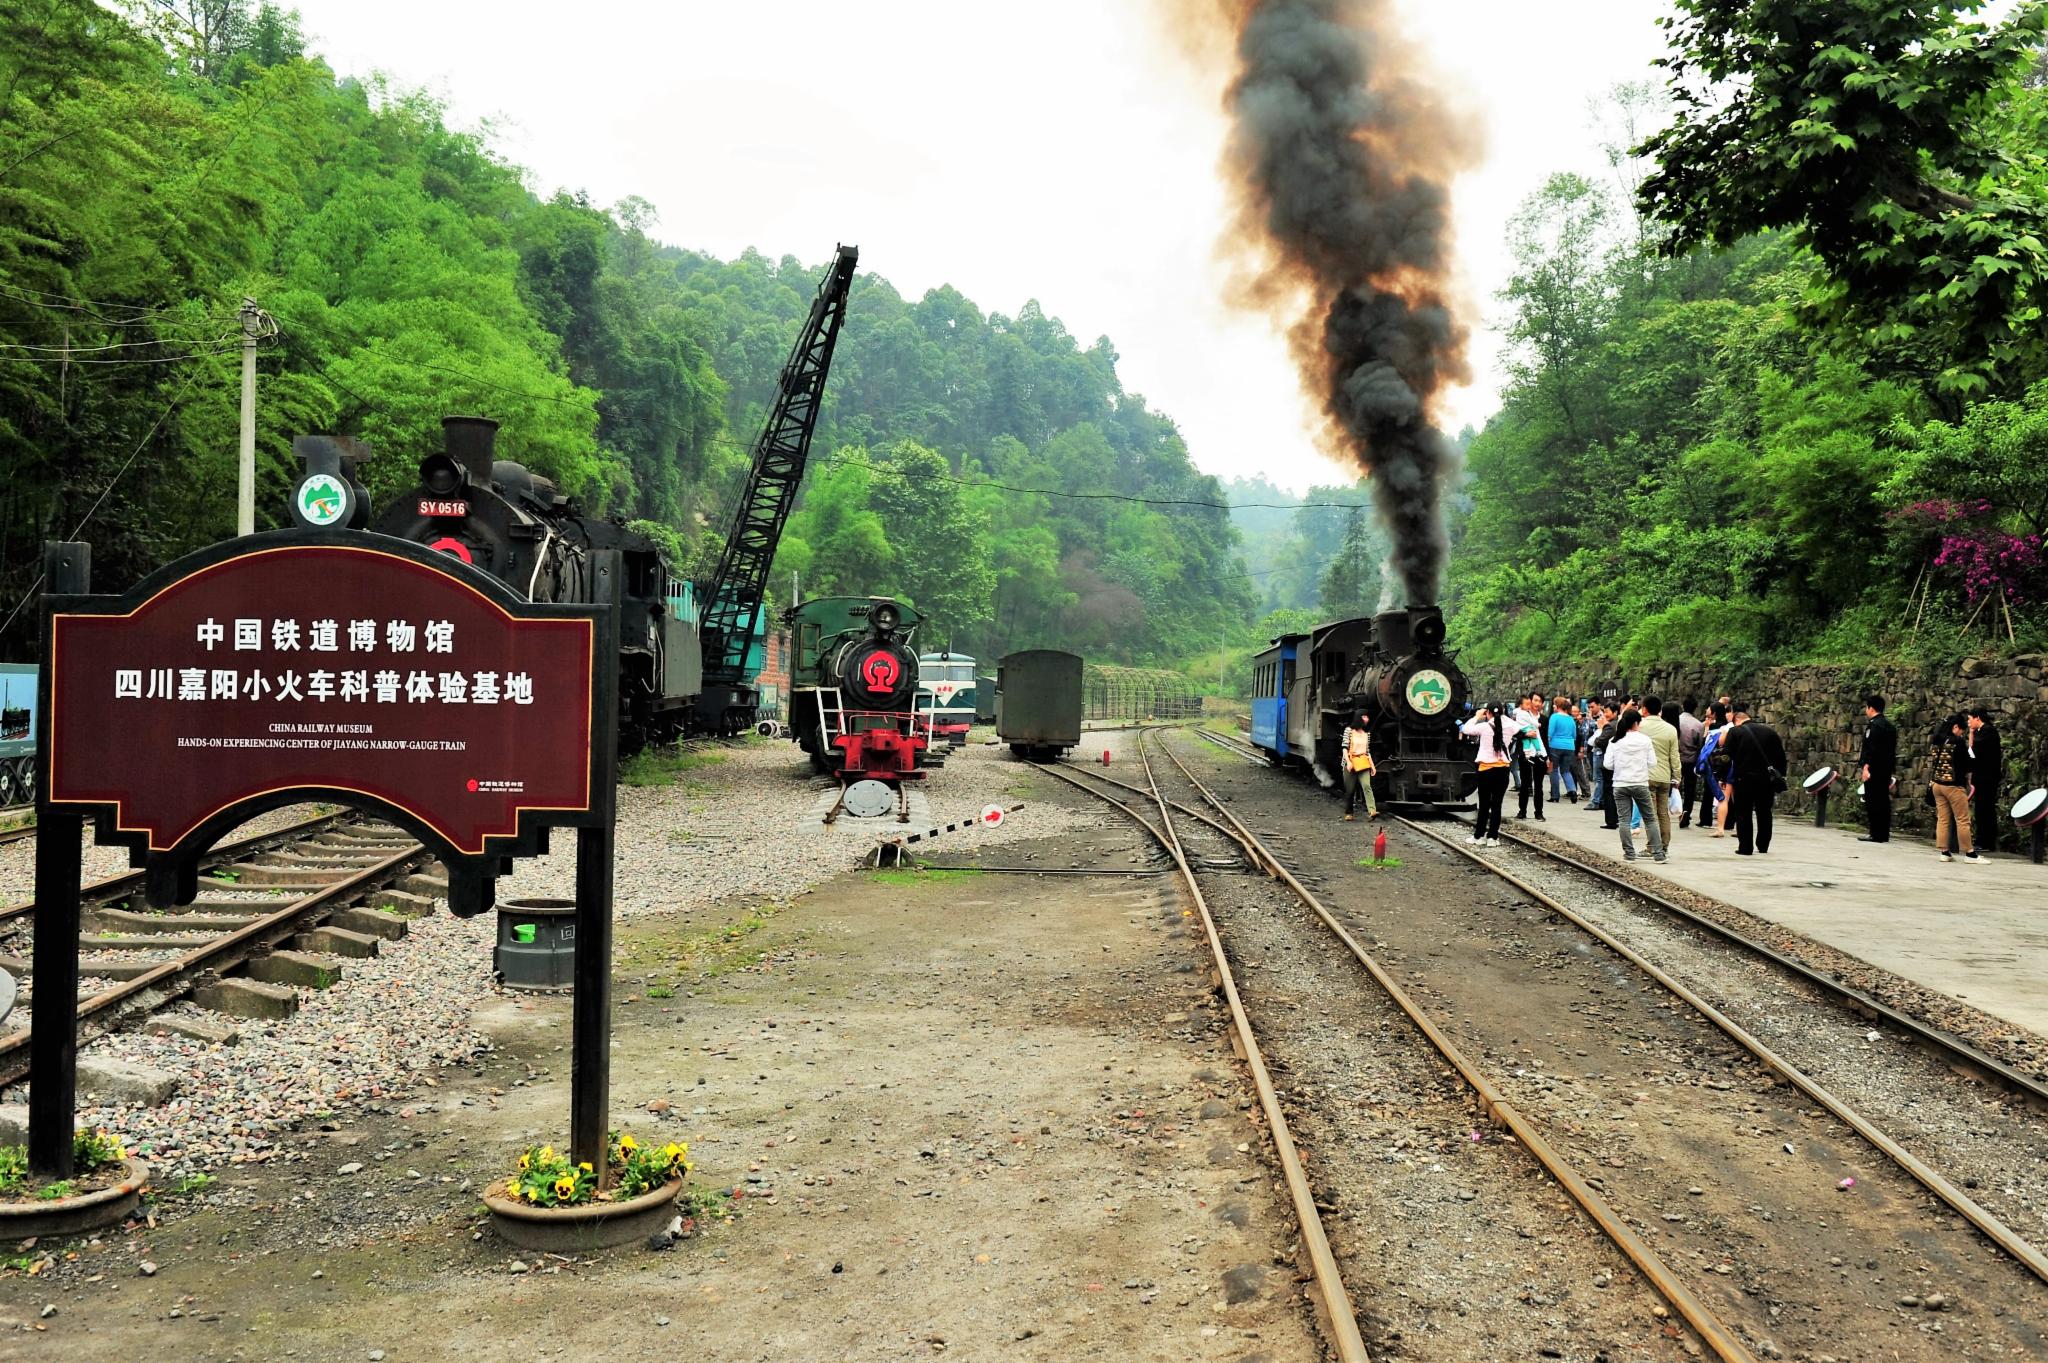 2022嘉阳小火车玩乐攻略,游客们感受蒸汽小火车给他们...【去哪儿攻略】